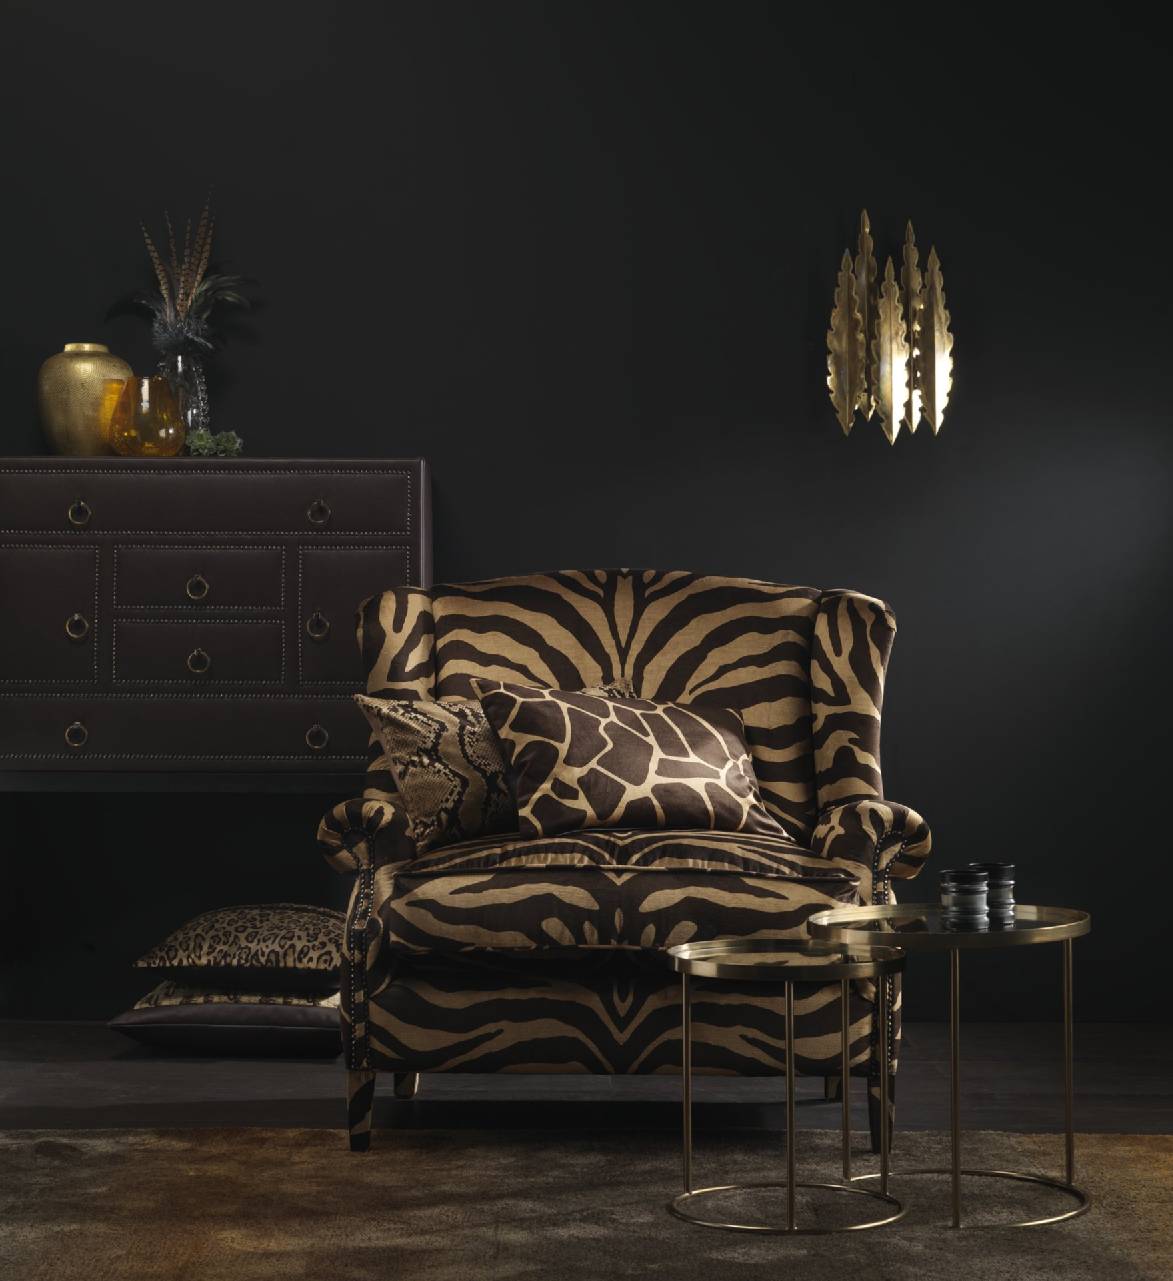 Sie wollen Ihre Möbel mit neuen ausgefallenen Stoffen von Carlucci beziehen? Kommen Sie zu Anke Friedrichs in Berlin, wir beraten Sie gerne